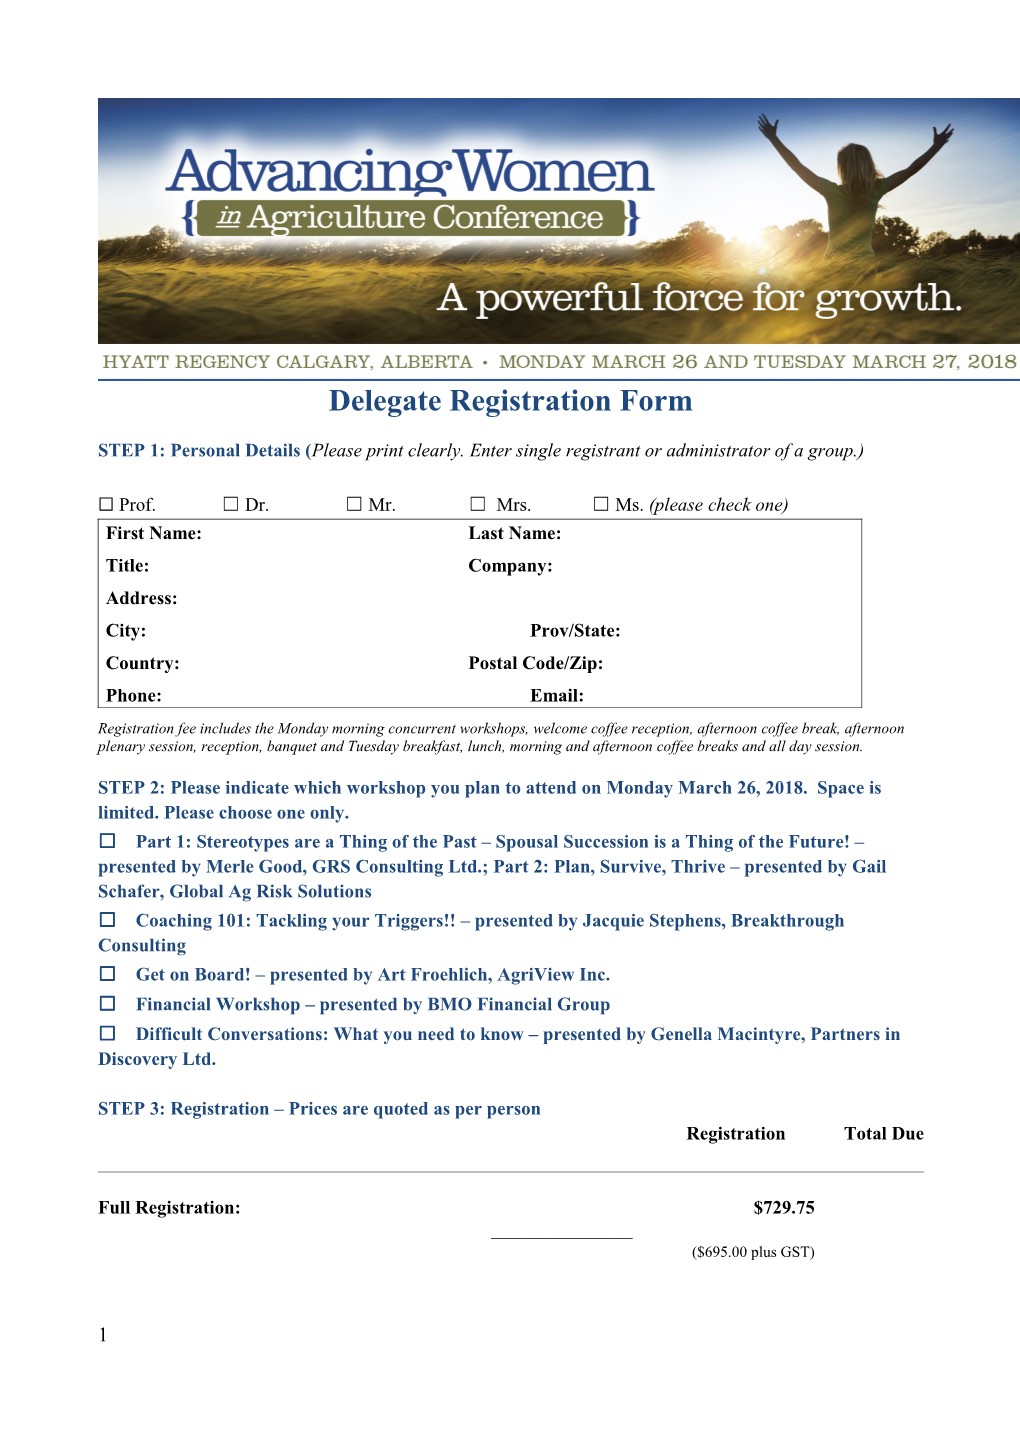 Delegate Registration Form s1